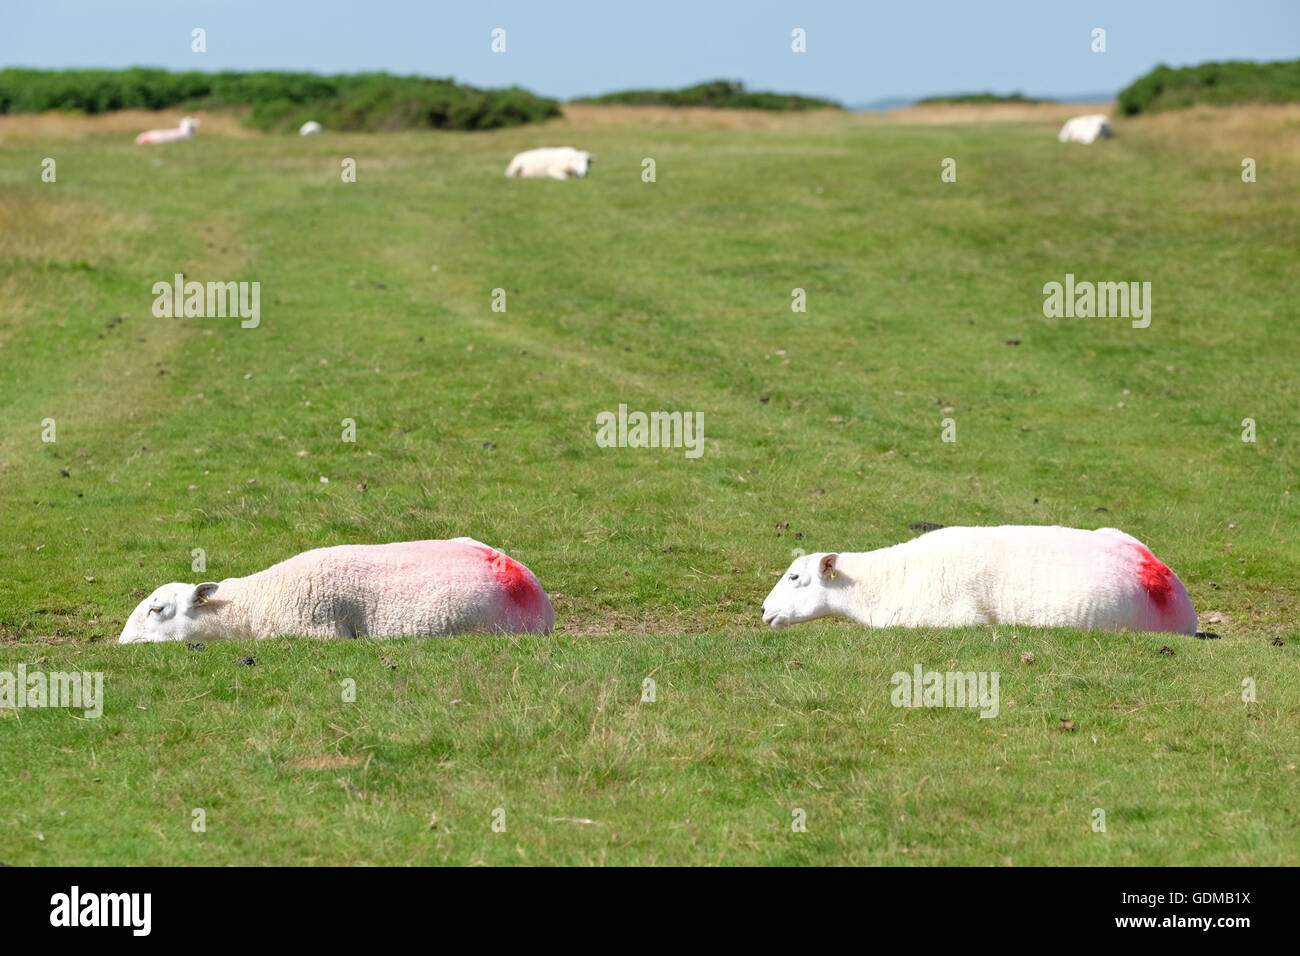 Hergest Ridge, Herefordshire, UK - Juli 2016 - Schafe versuchen zu bewältigen das sehr heiße Wetter hoch oben auf Hergest Ridge (426 m Höhe) mit der Verlegung in einem flachen Sprung. Lokale Temperatur von 30 ° c werden der heißeste Tag des Jahres so weit erwartet. Der Grat überspannt die Grenze zwischen Herefordshire und Powys, England und Wales. Stockfoto